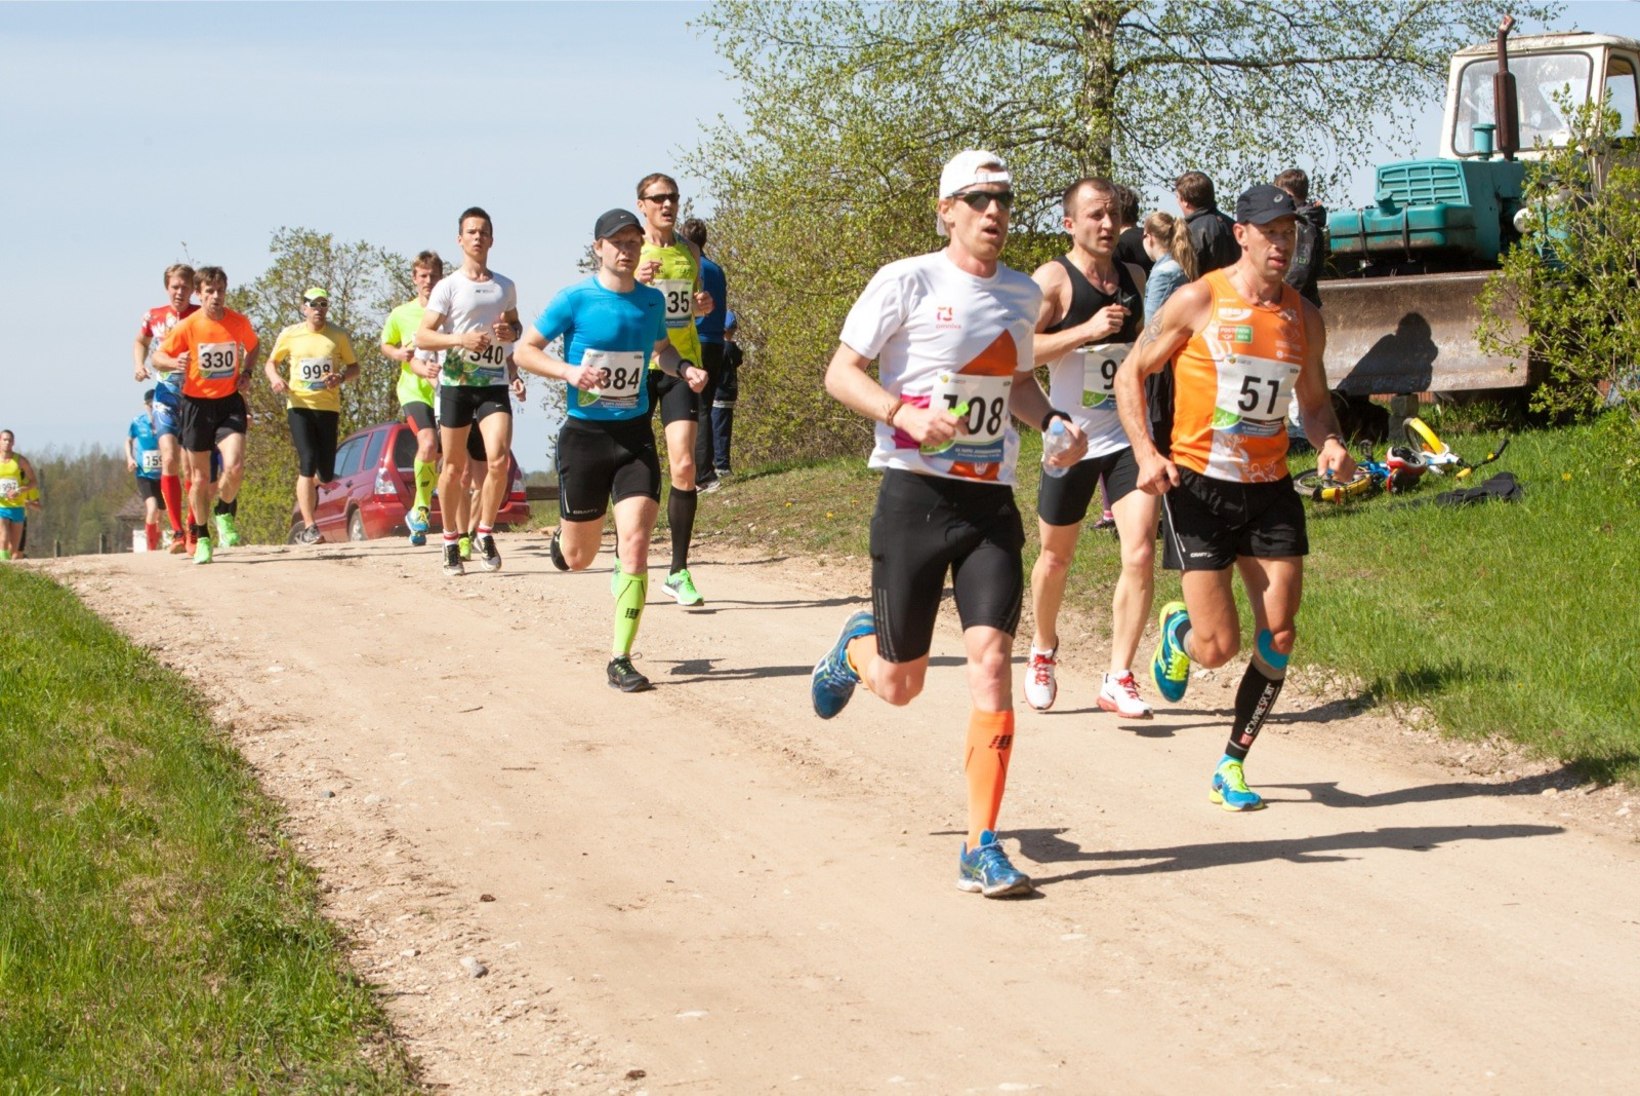 OHUD VÕIVAD OLLA MÄRKAMATUD: meedikud avastasid enne maratoni jooksjatel mitmeid terviseprobleeme